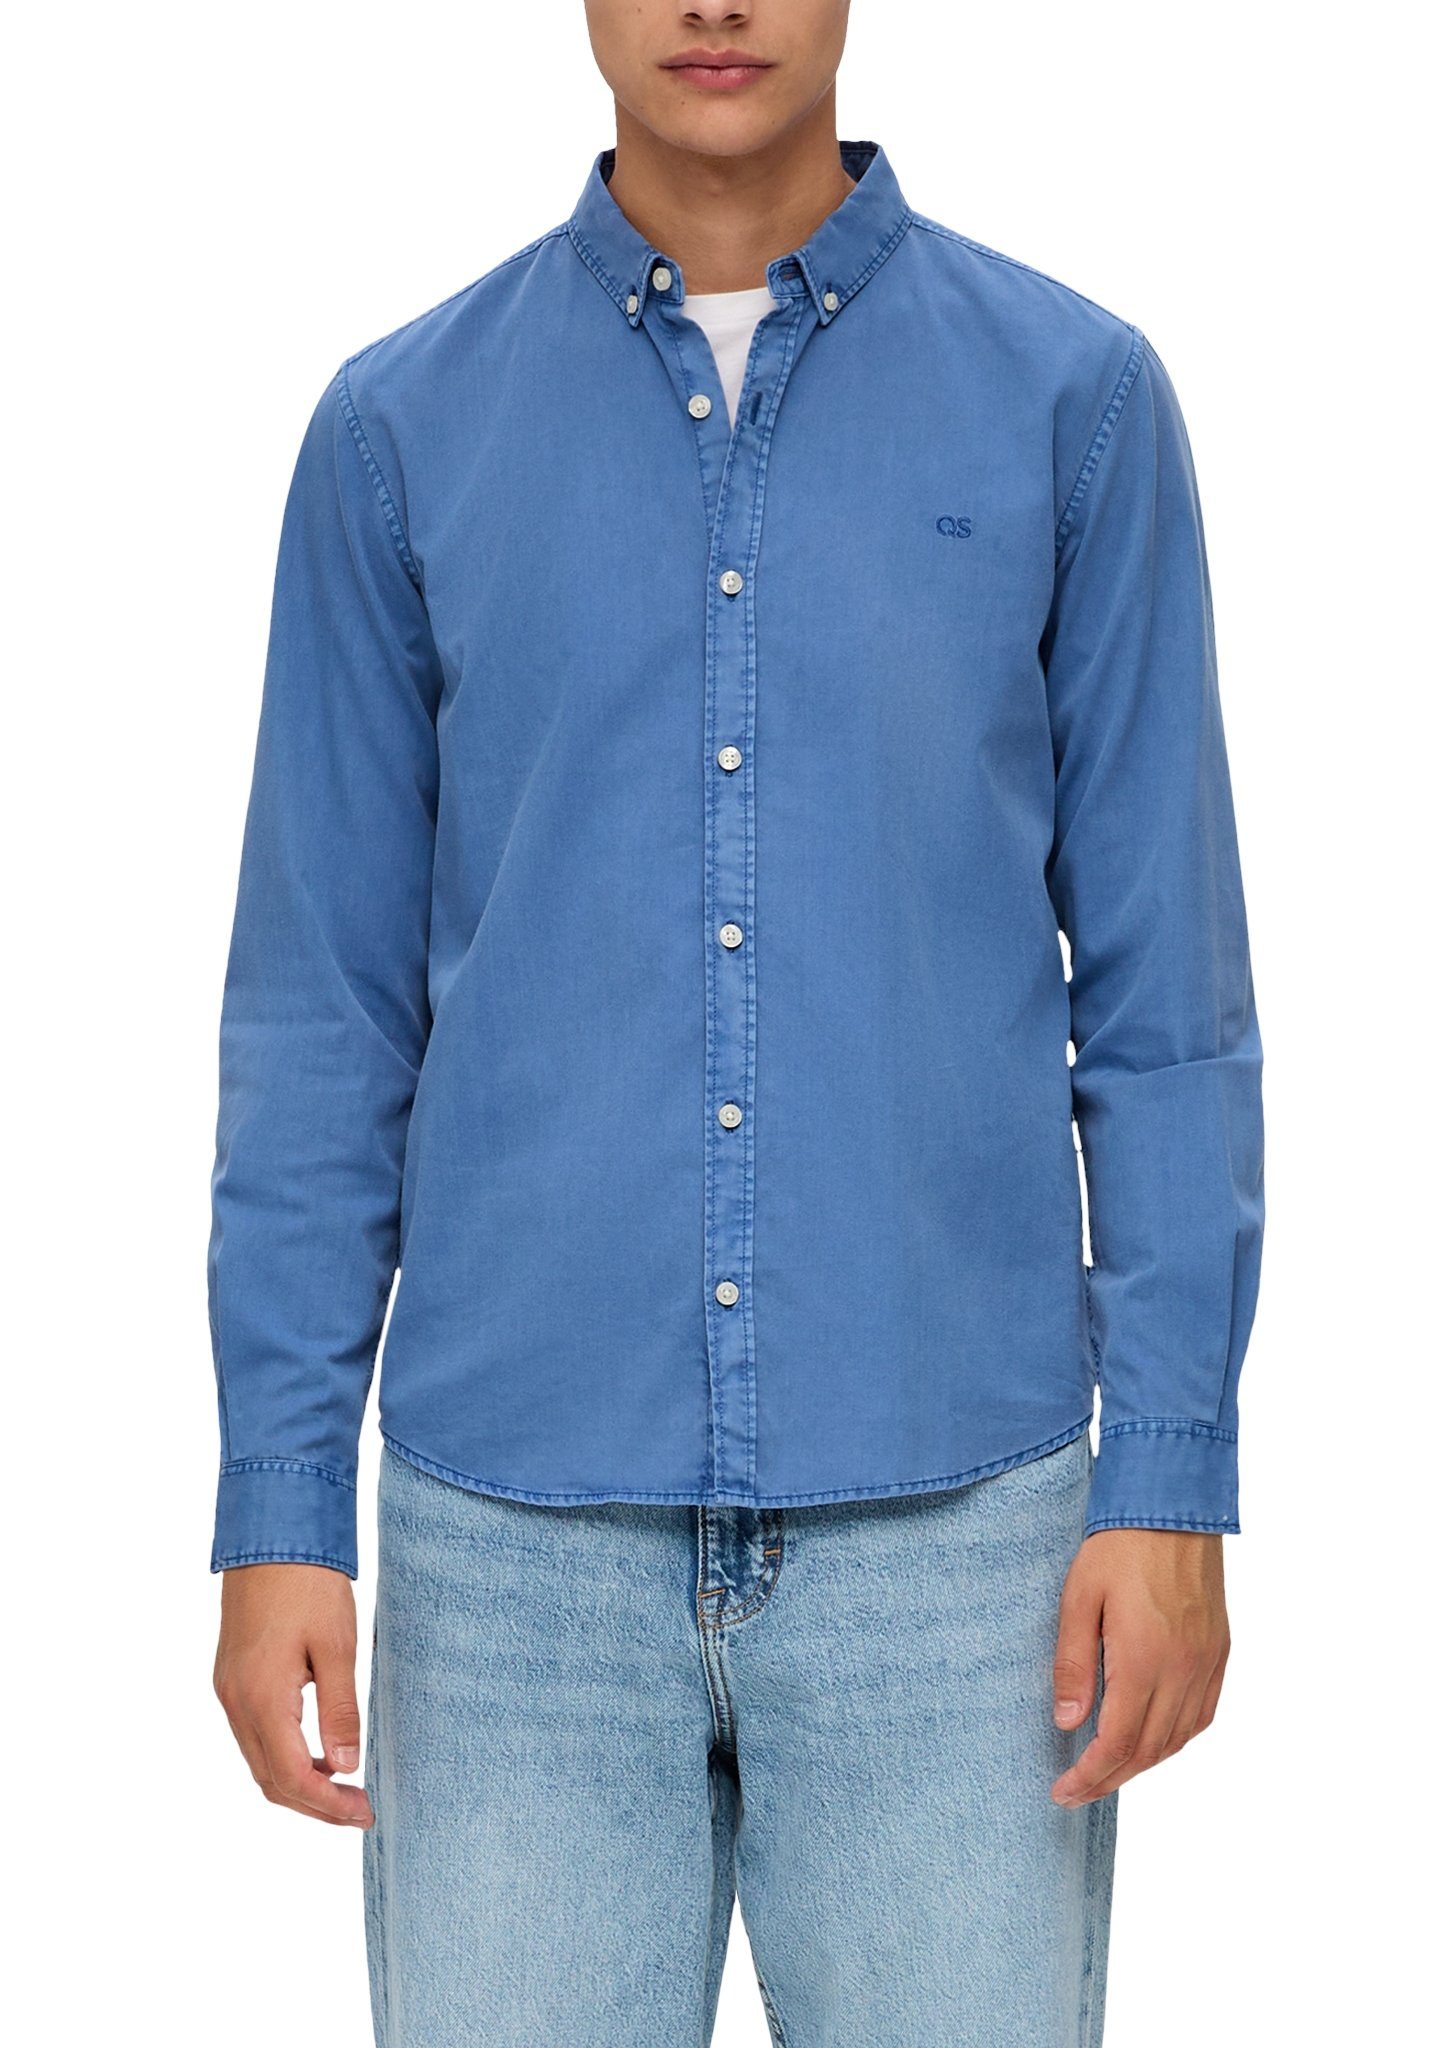 Рубашка мужская QS by s.Oliver 50.3.51.11.120.2134662*5374*S свело-синяя, размер S